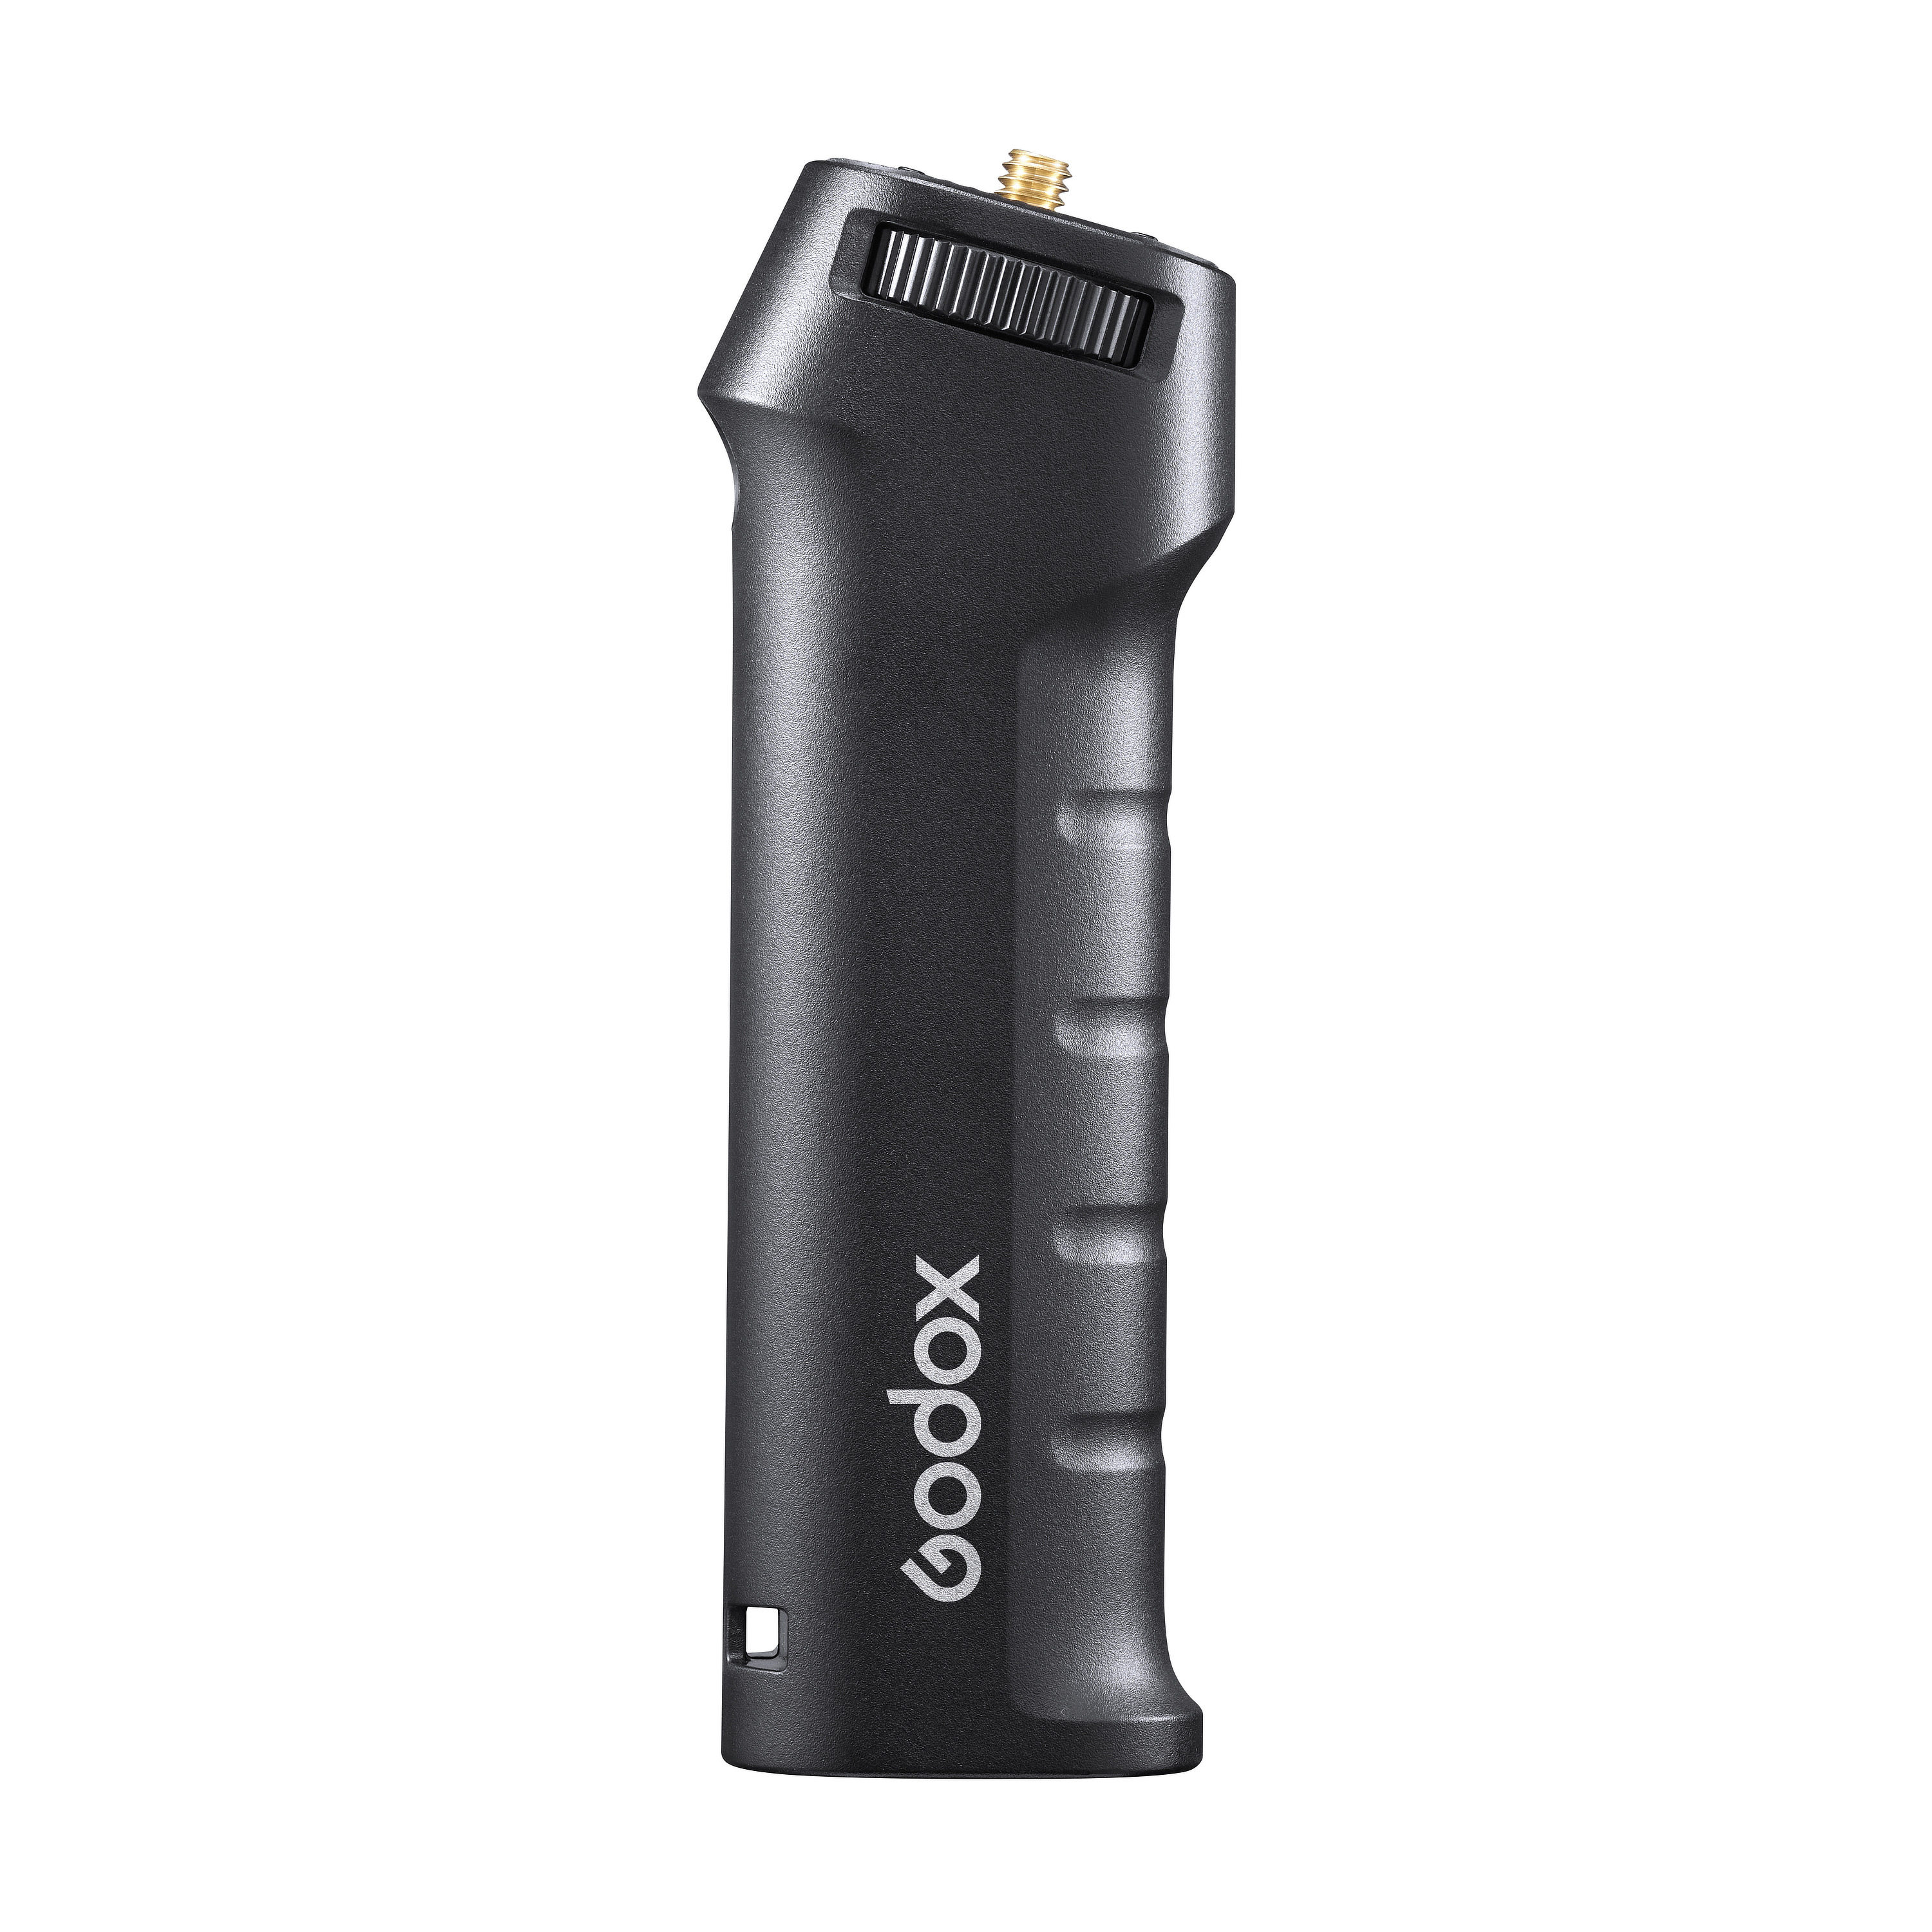 Рукоятка Godox FG-100 для аккумуляторных вспышек